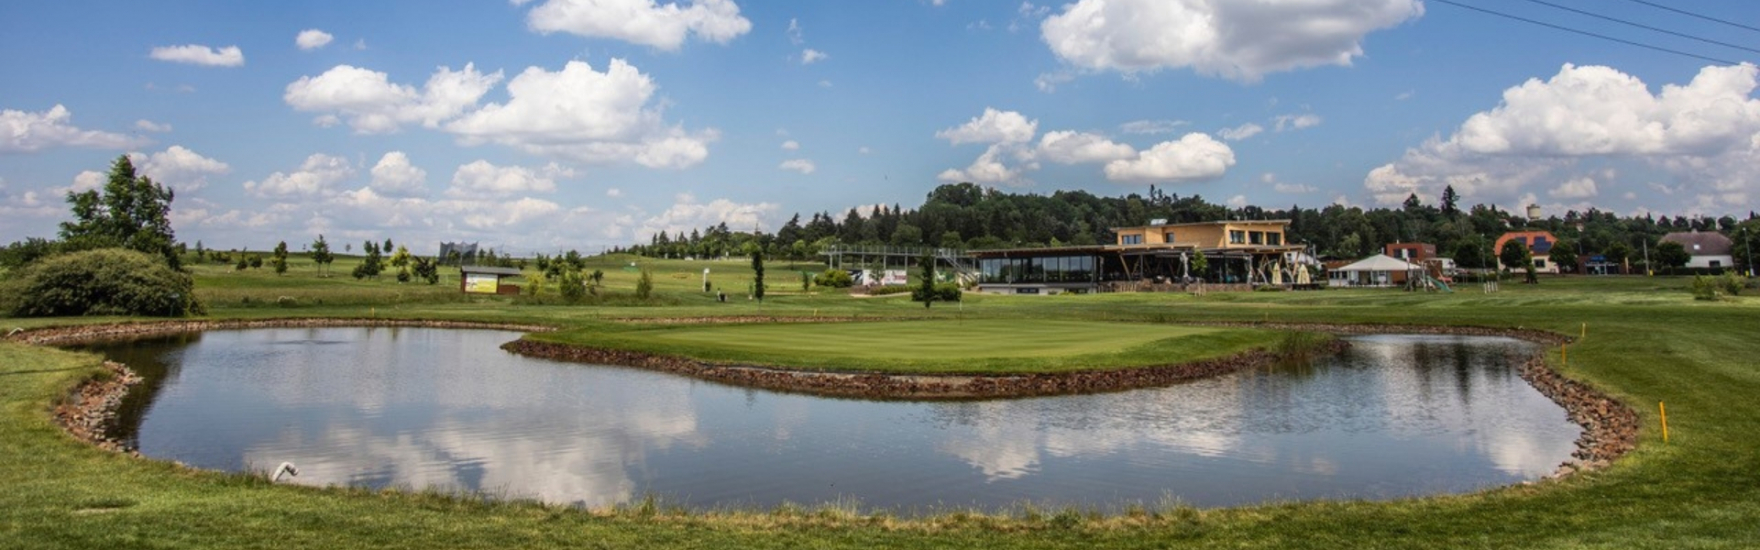 Rozhovor s manažerkou hradeckého hřiště Park Golf: Proč vyrazit na golf právě sem?